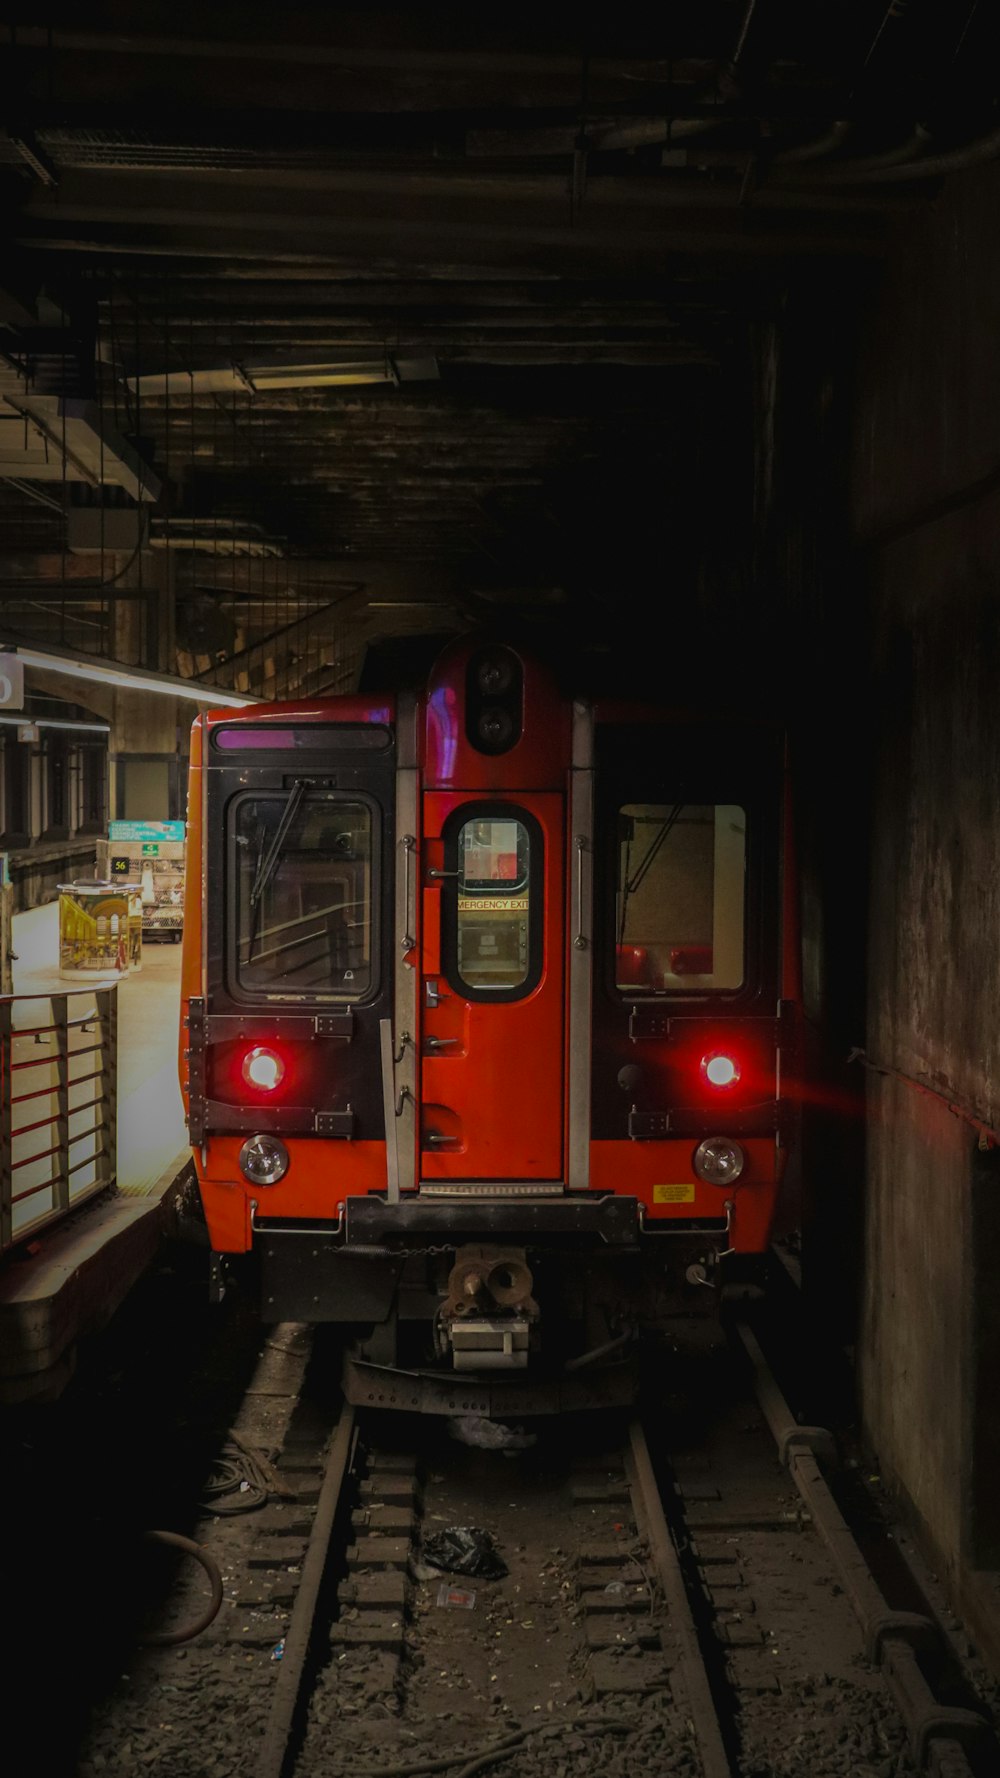 um trem vermelho viajando pelos trilhos do trem ao lado de uma plataforma de carregamento